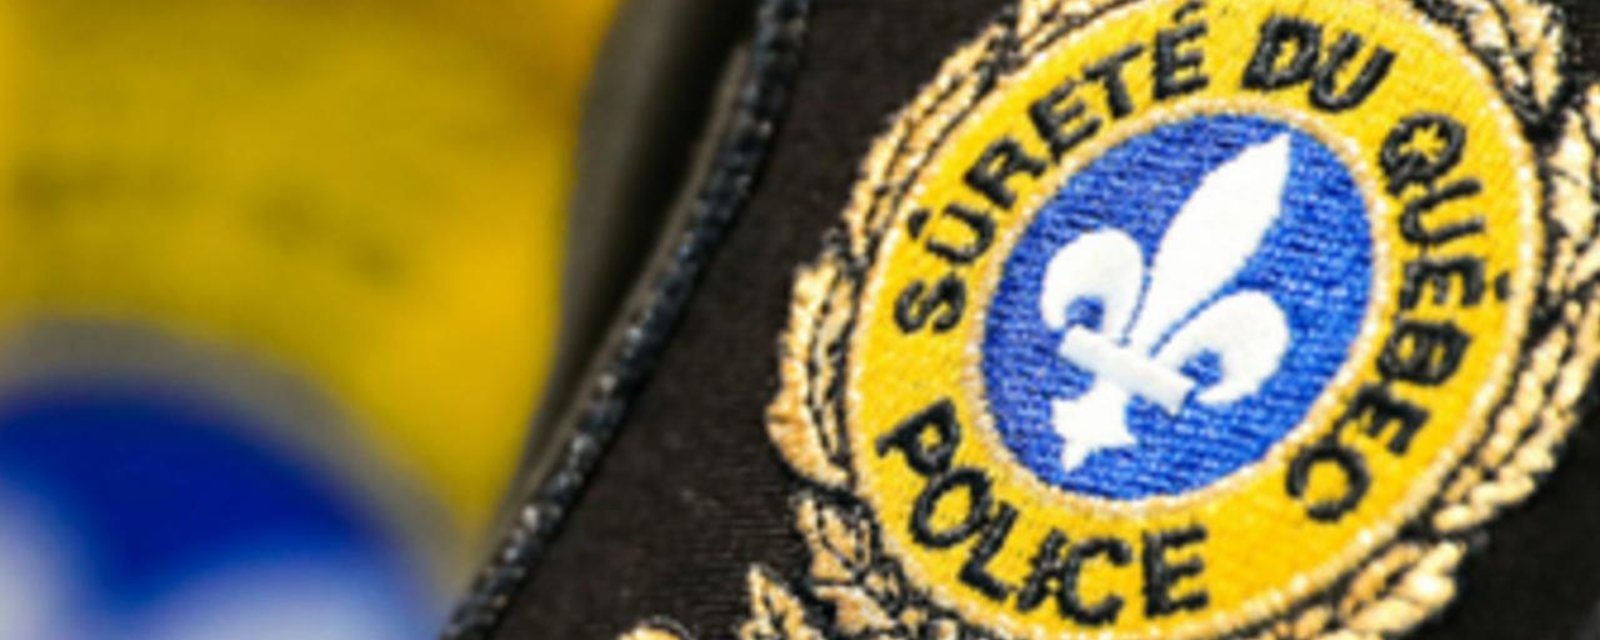 Un agent de la Sûreté du Québec est arrêté pour trafic de stupéfiants et abus de confiance.